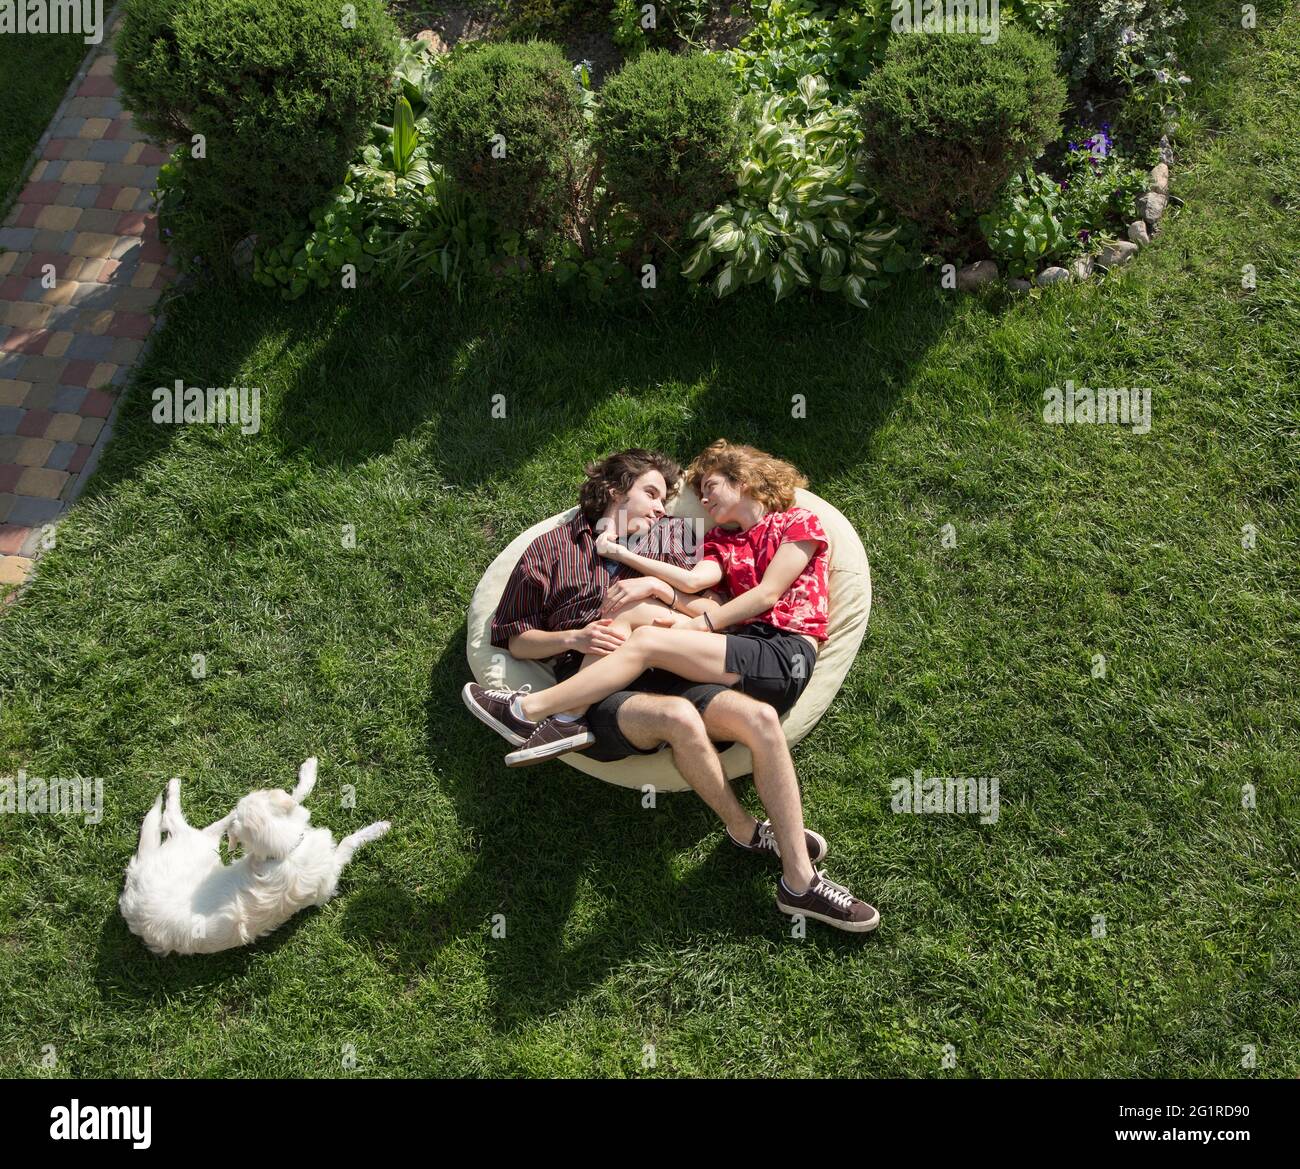 los adolescentes de 16-17 años, un tipo y una niña, se abrazan en una gran bolsa blanda sobre la hierba verde. Jóvenes enamorados. Relación romántica. Relájese, Foto de stock